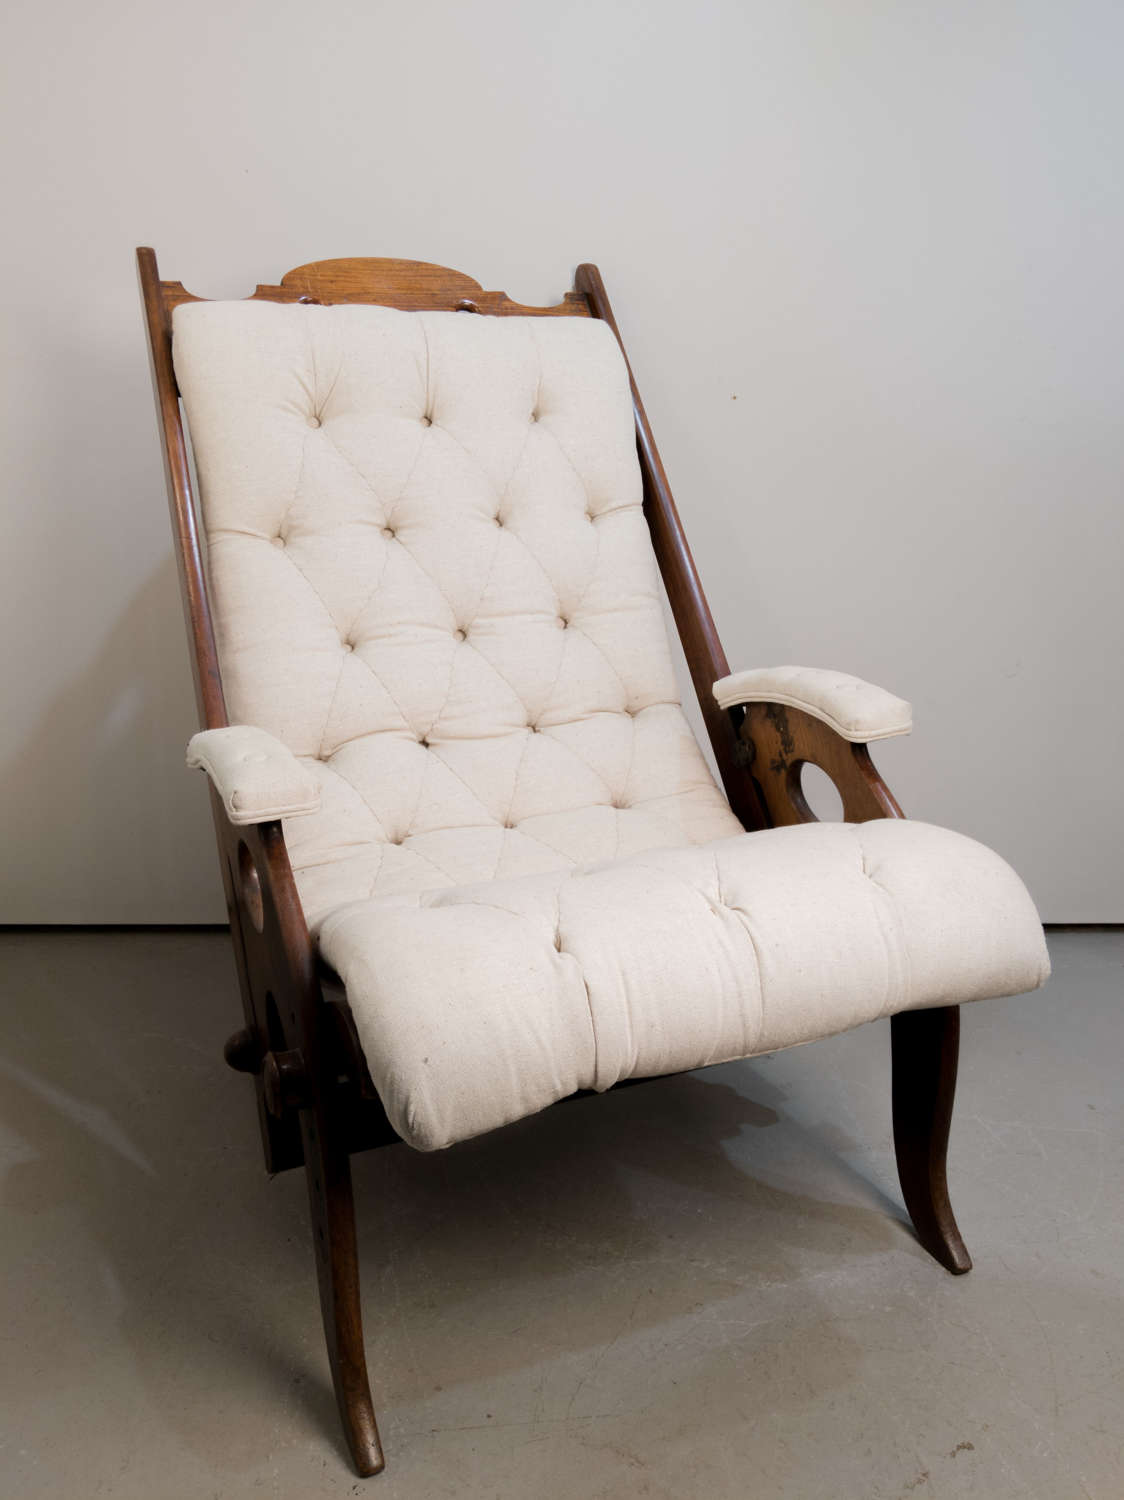 Circa 1850 A Scottish chair